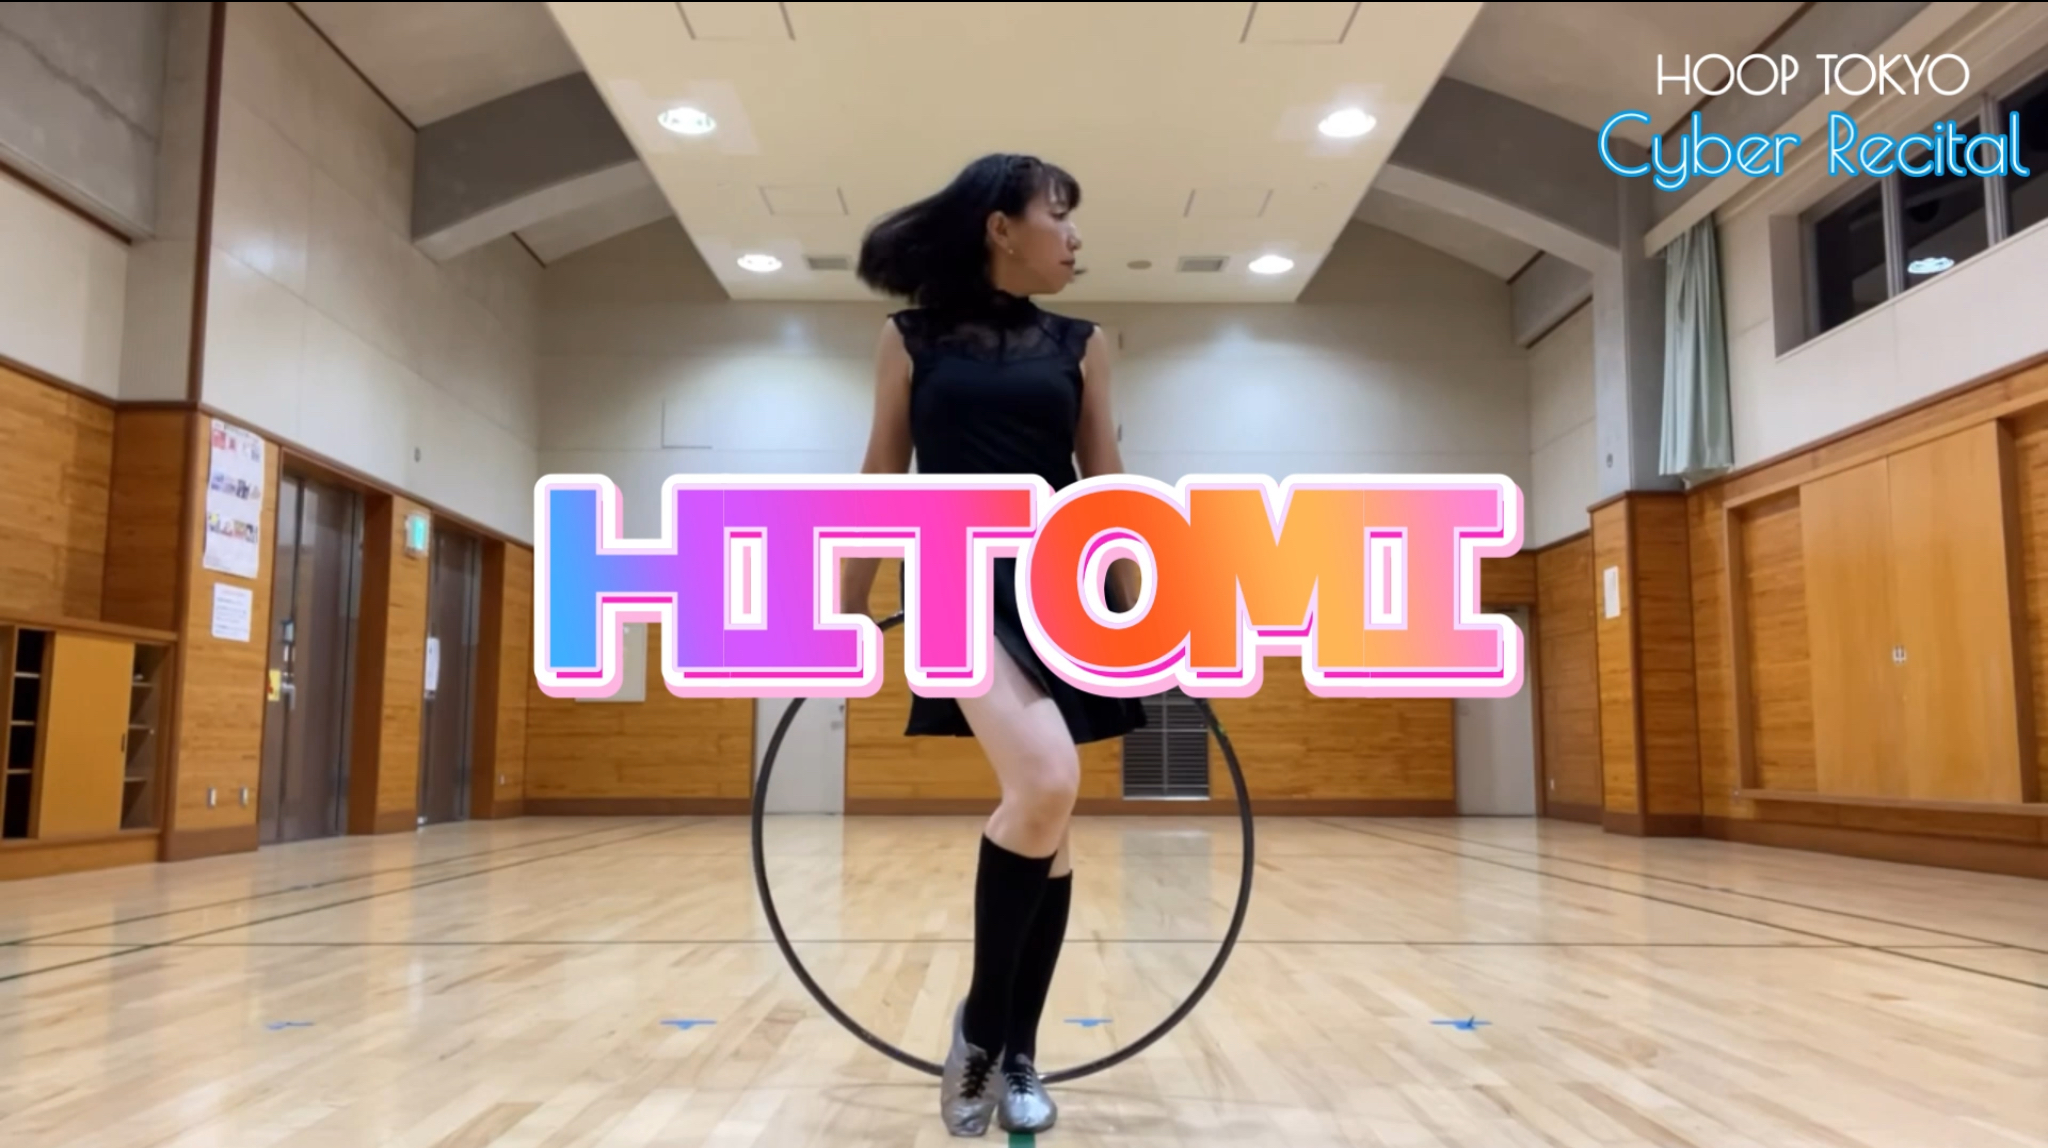 フープ東京サイバーリサイタルにエントリーされたHITOMIさんのフープダンス作品。